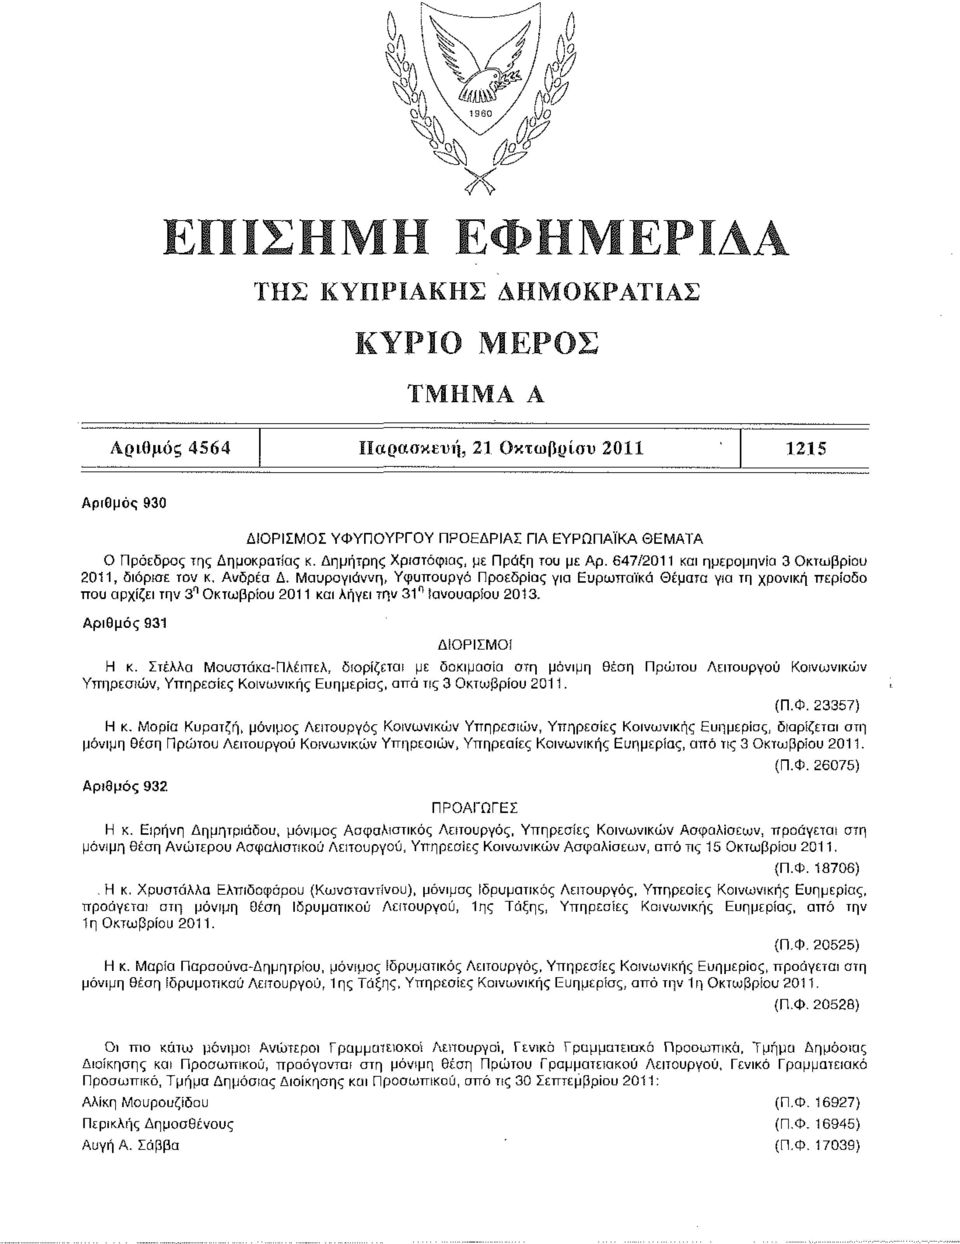 Μαυρογιάννη, Υφυπουργό Προεδρίας για Ευρωπαϊκά Θέματα για τη χρονική περίοδο που αρχίζει την 3 η Οκτωβρίου 2011 και λήγει την 31" Ιανουαρίου 2013. Αριθμός 931 ΔΙΟΡΙΣΜΟΙ Η κ.